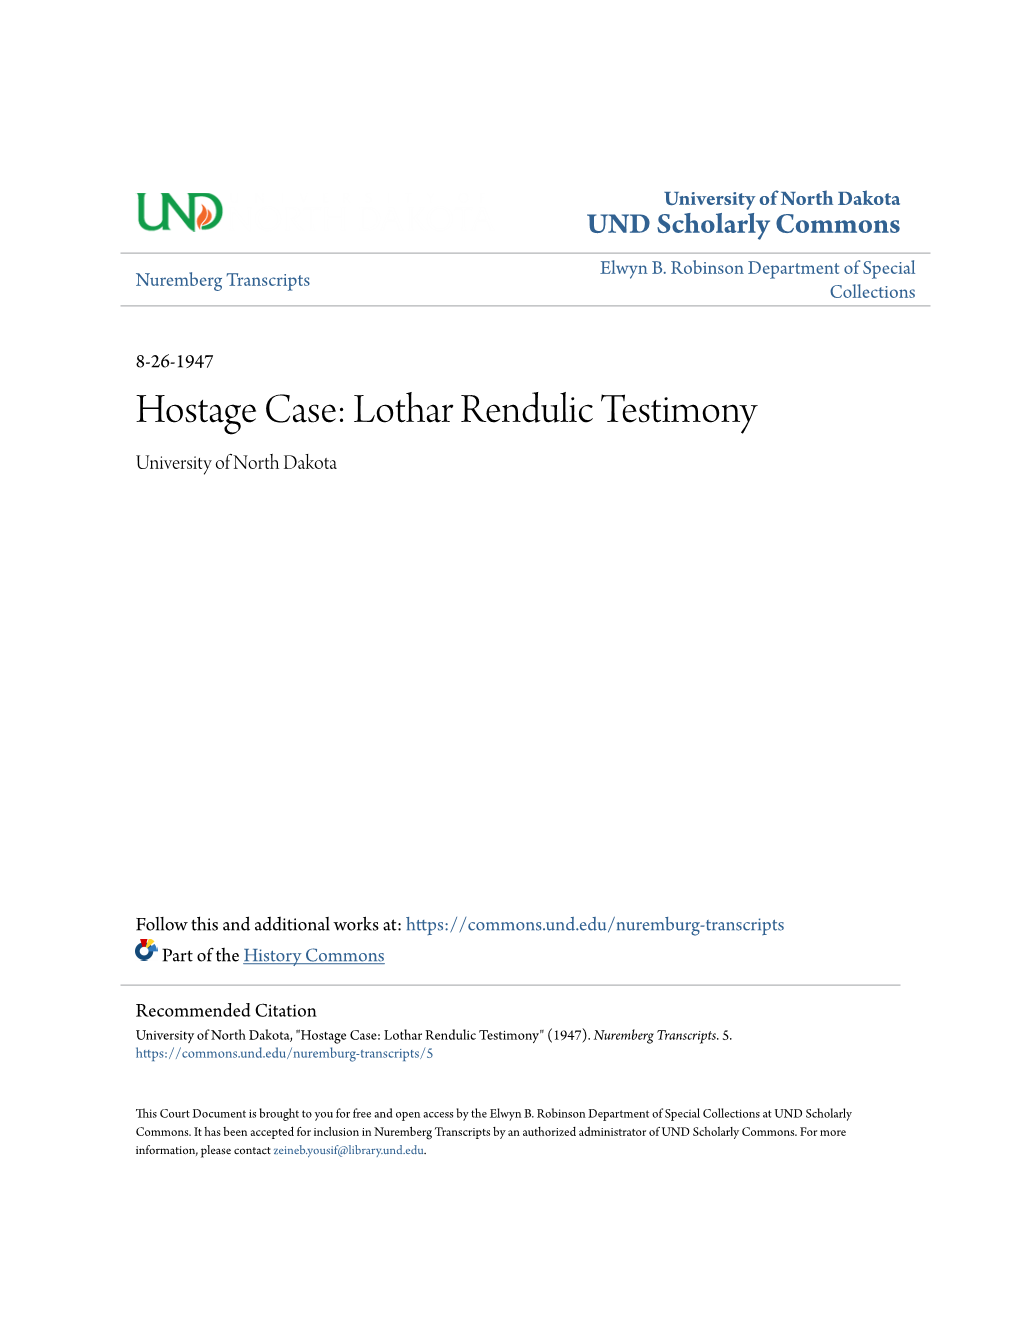 Lothar Rendulic Testimony University of North Dakota